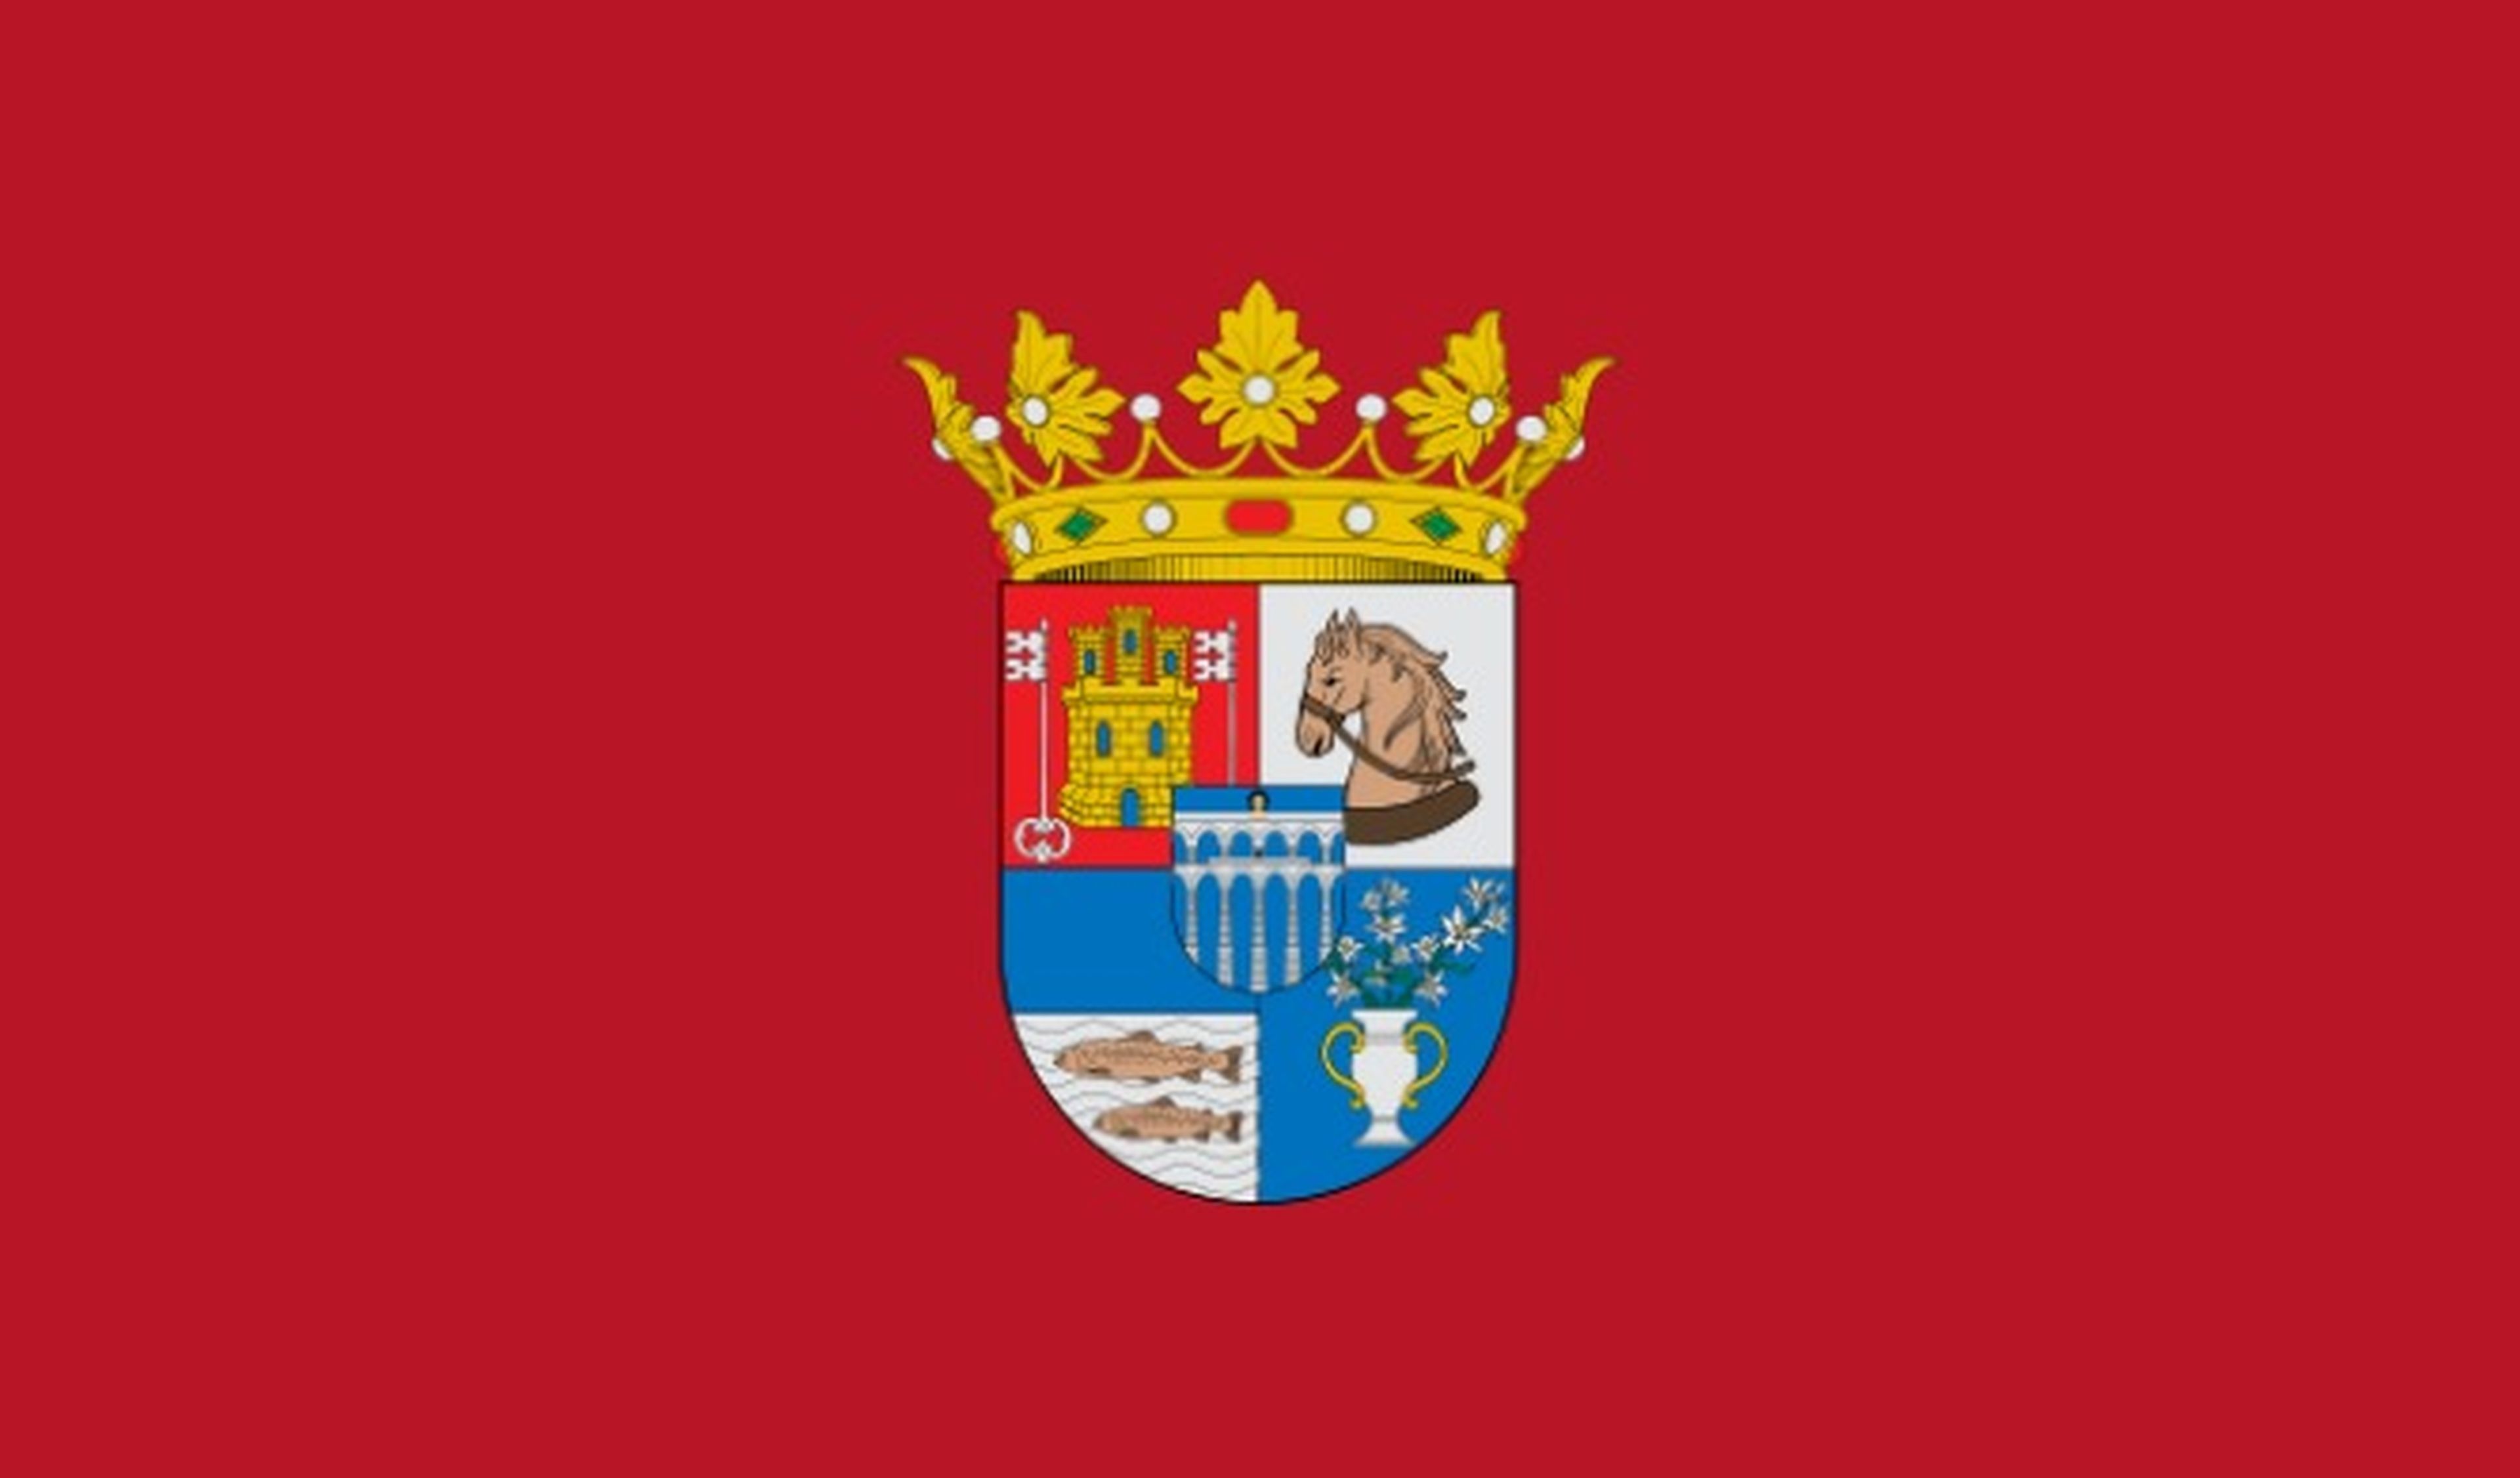 Radares Segovia 2020